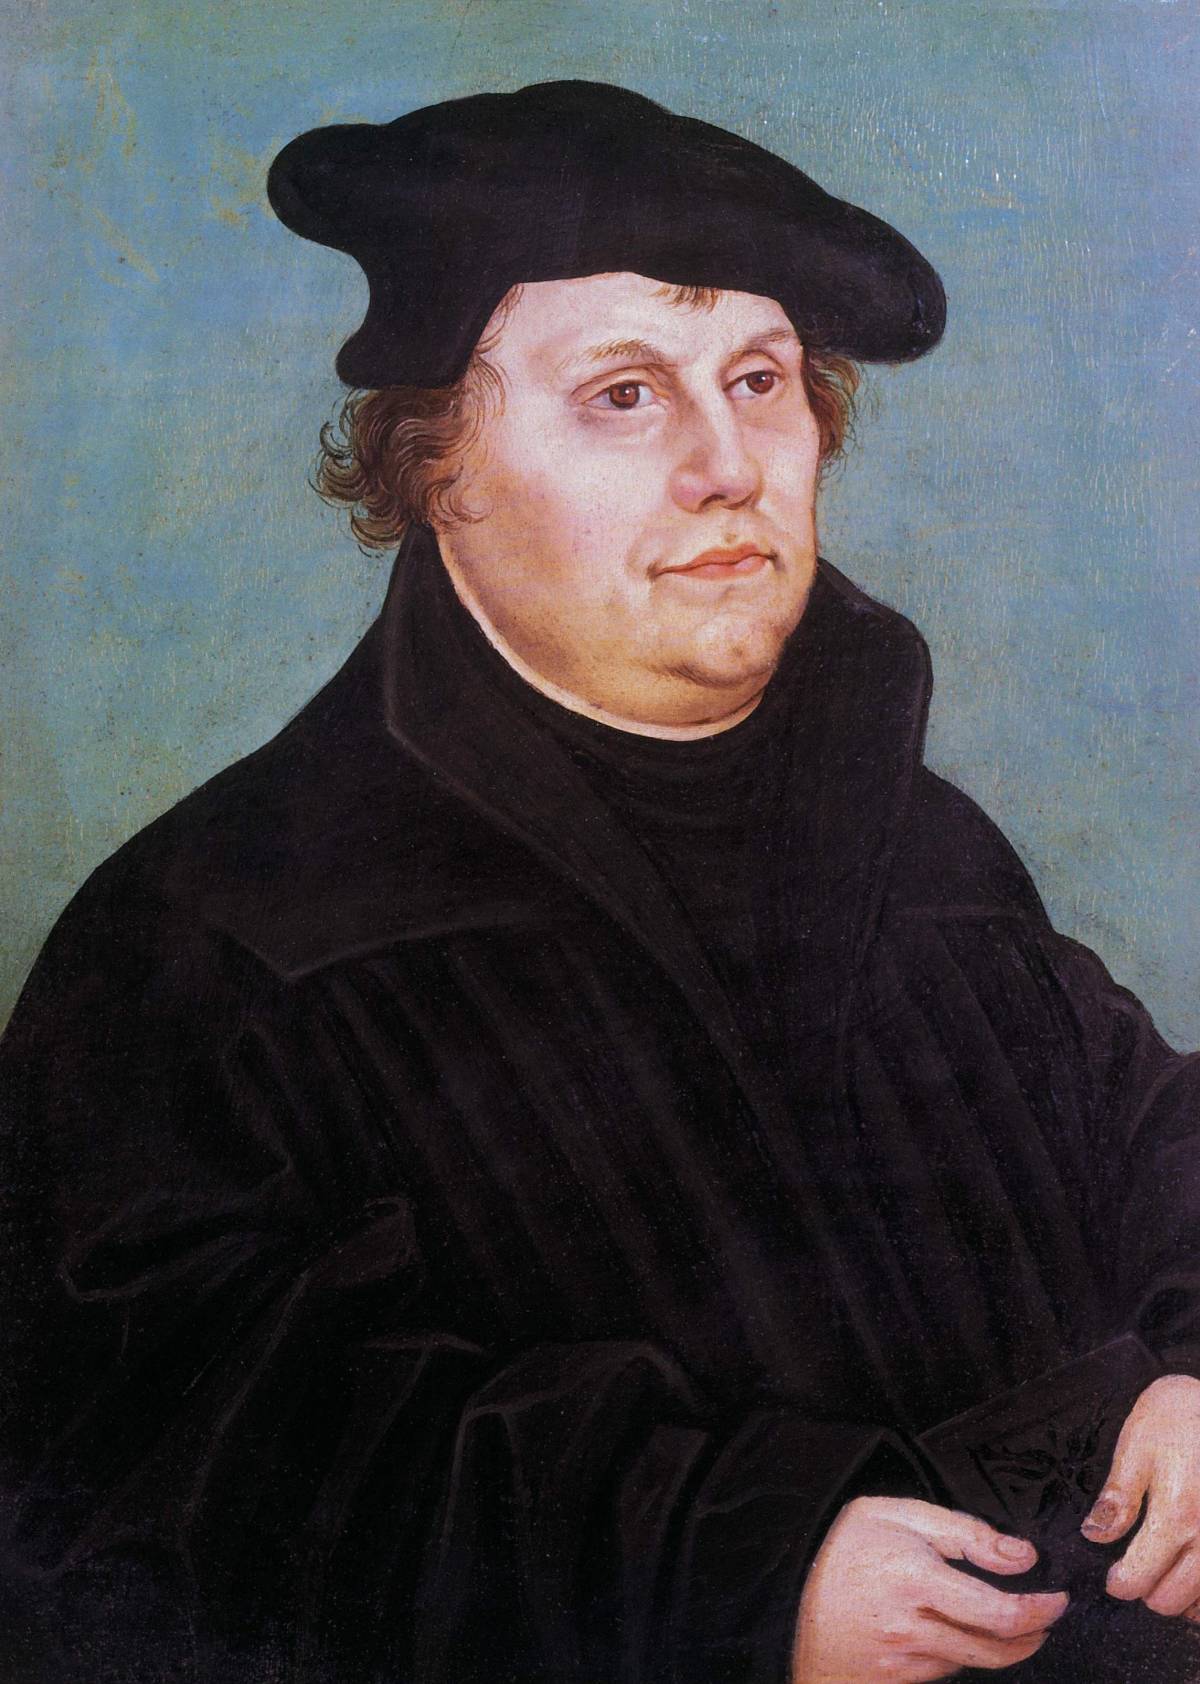 Così la riforma di Lutero fece crollare il primato culturale italiano